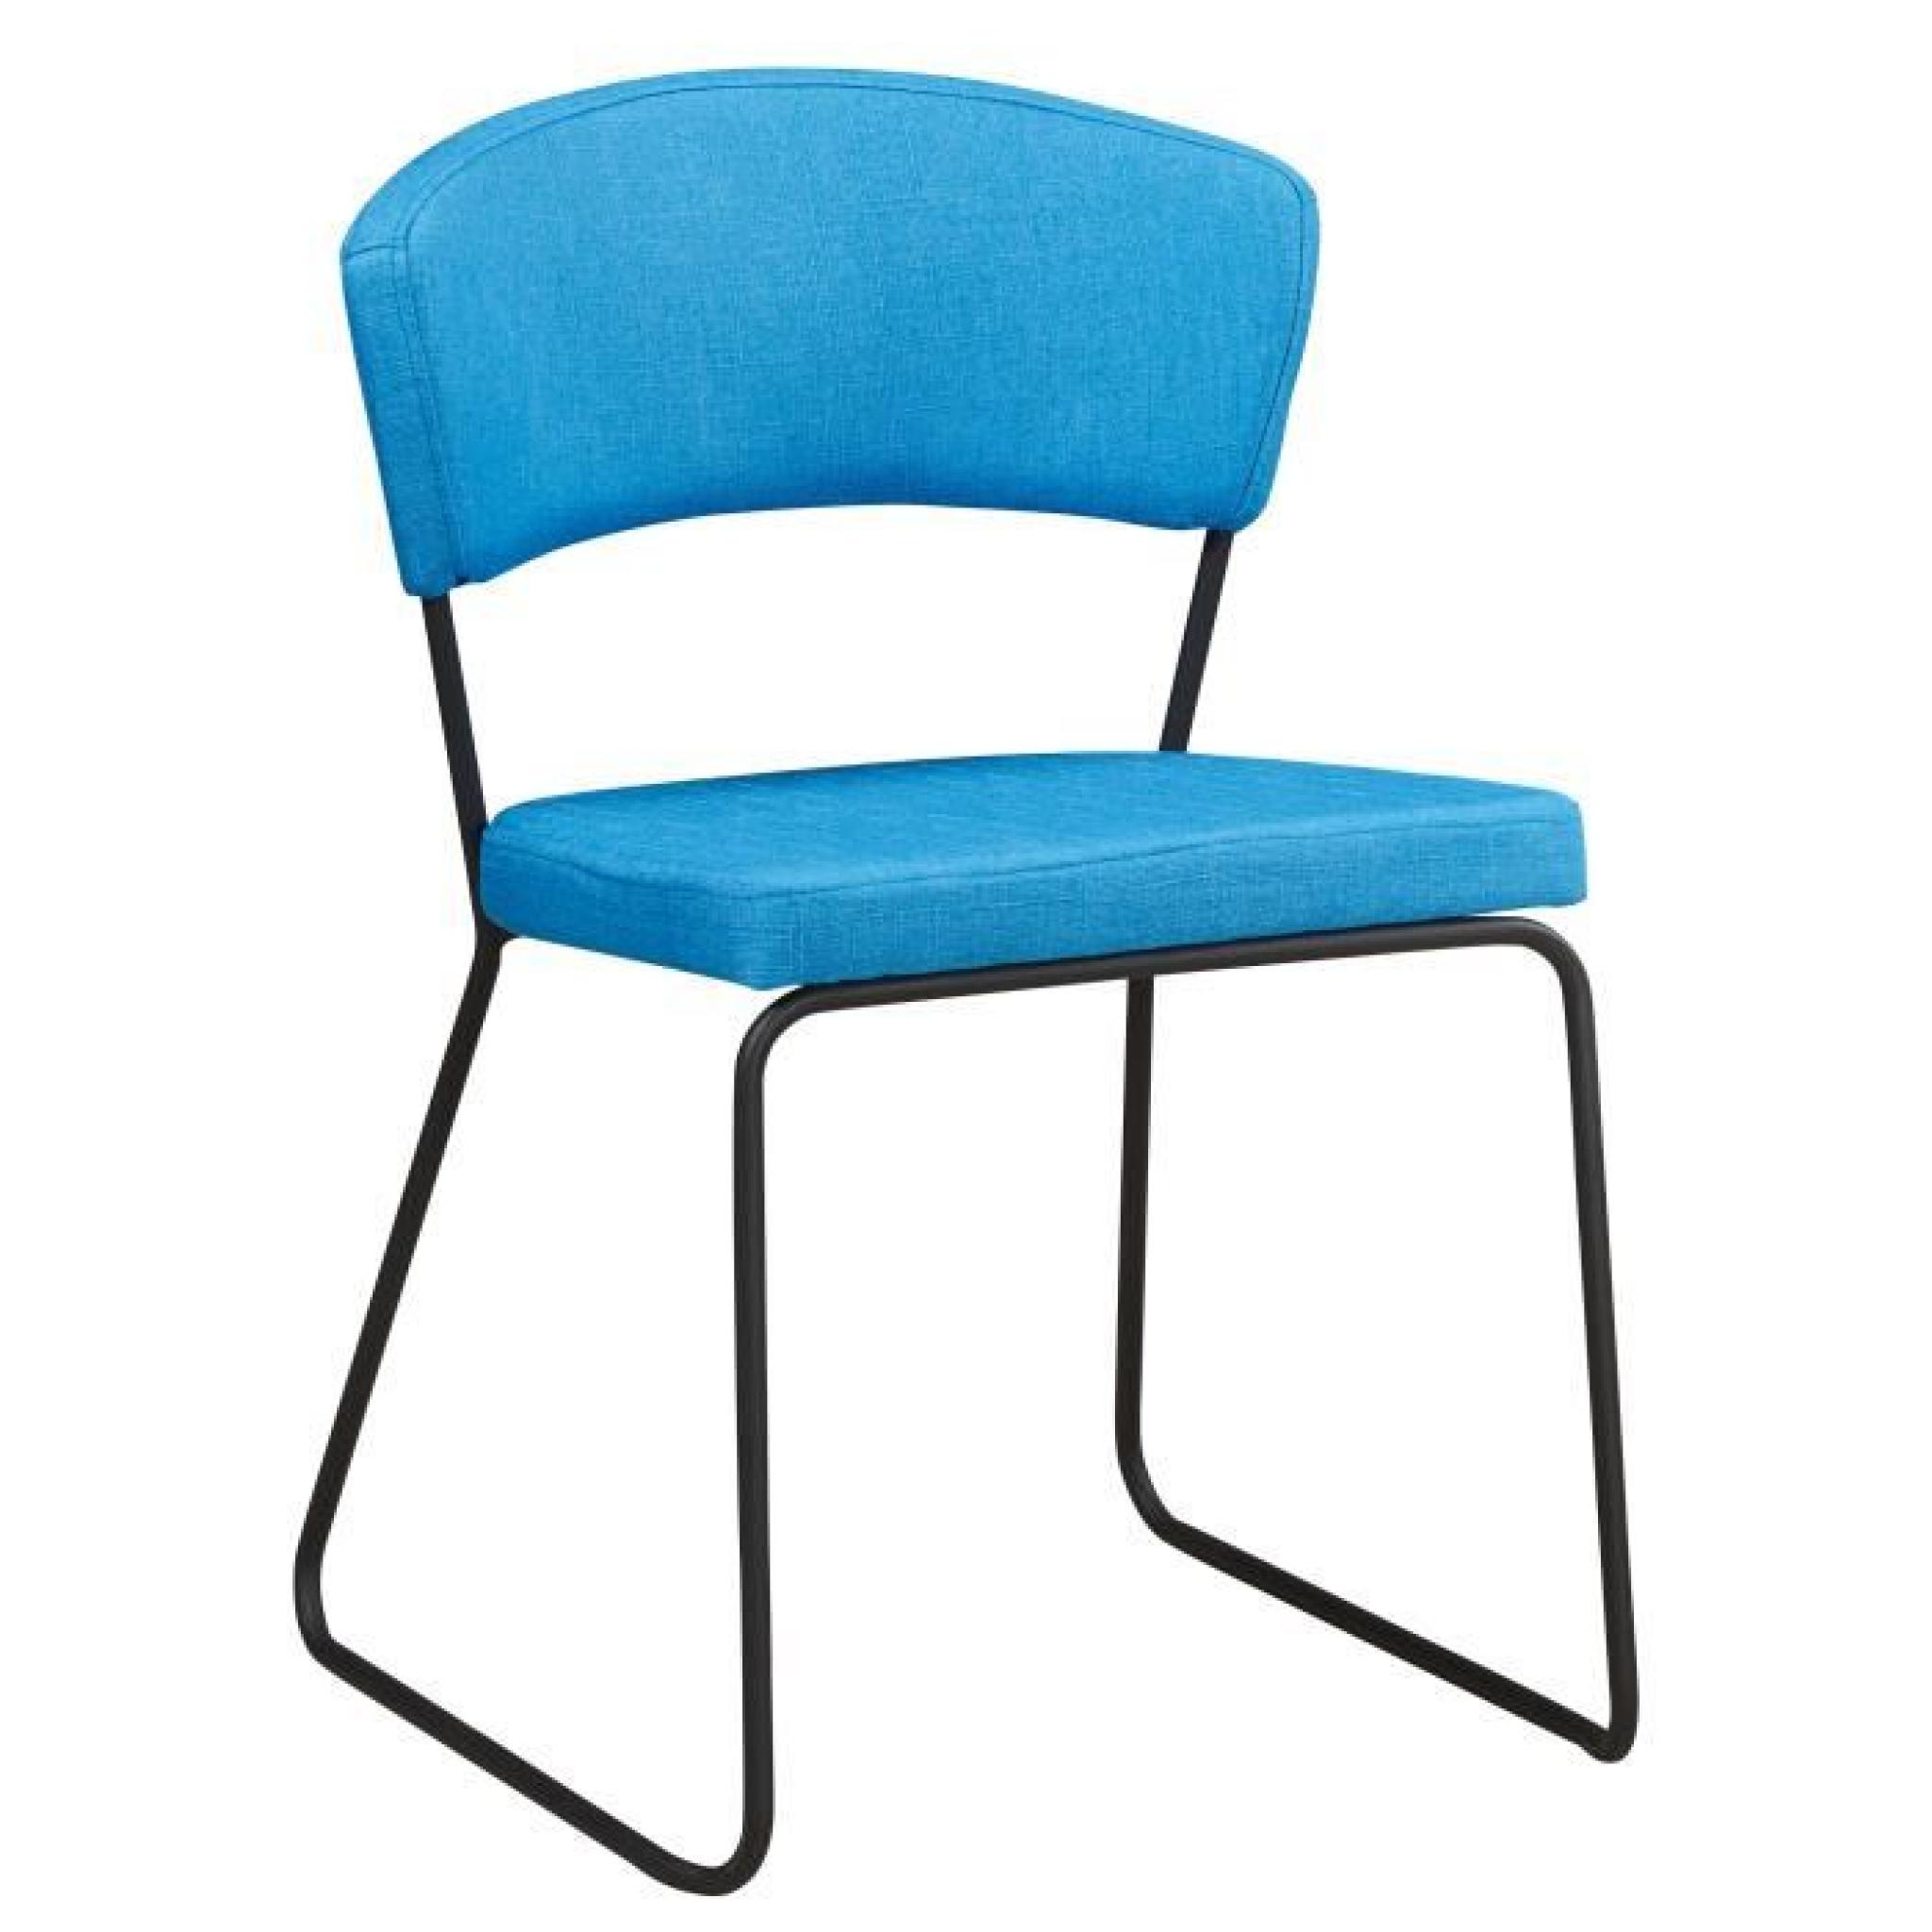 Chaise design minimaliste en tissus coloris bleu azur